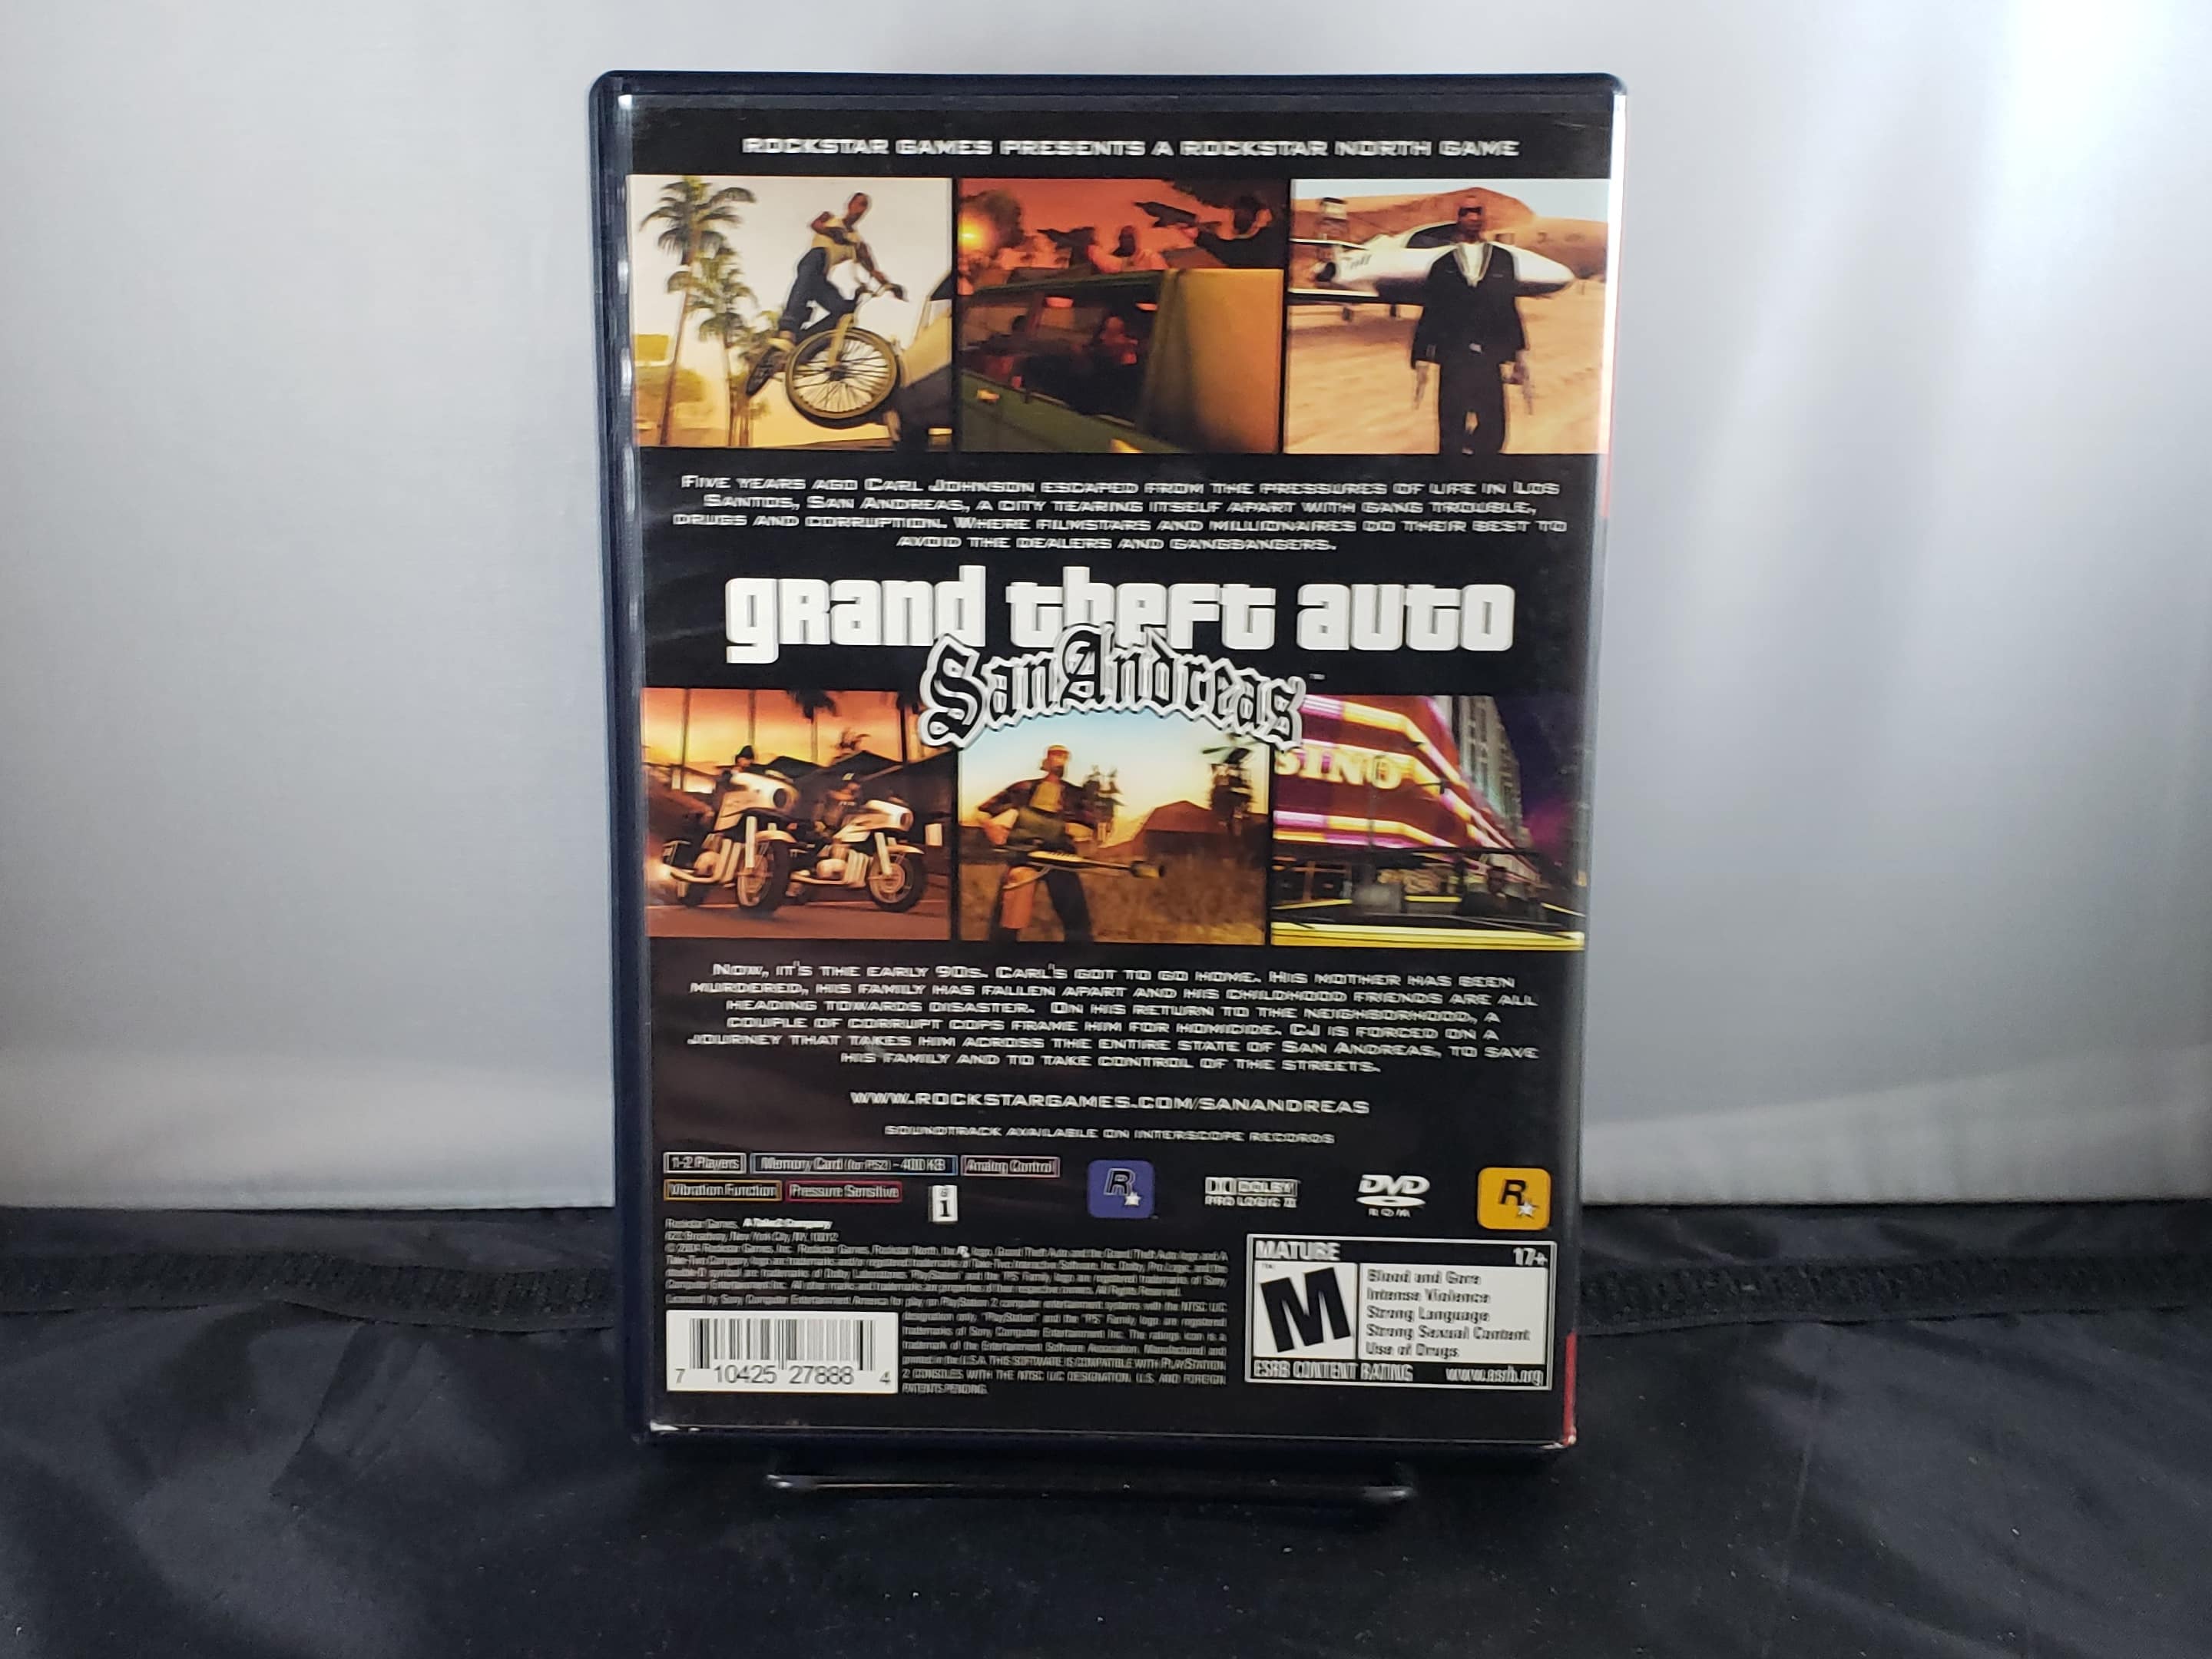 Preços baixos em Grand Theft Auto: San Andreas Sony PS2 Video